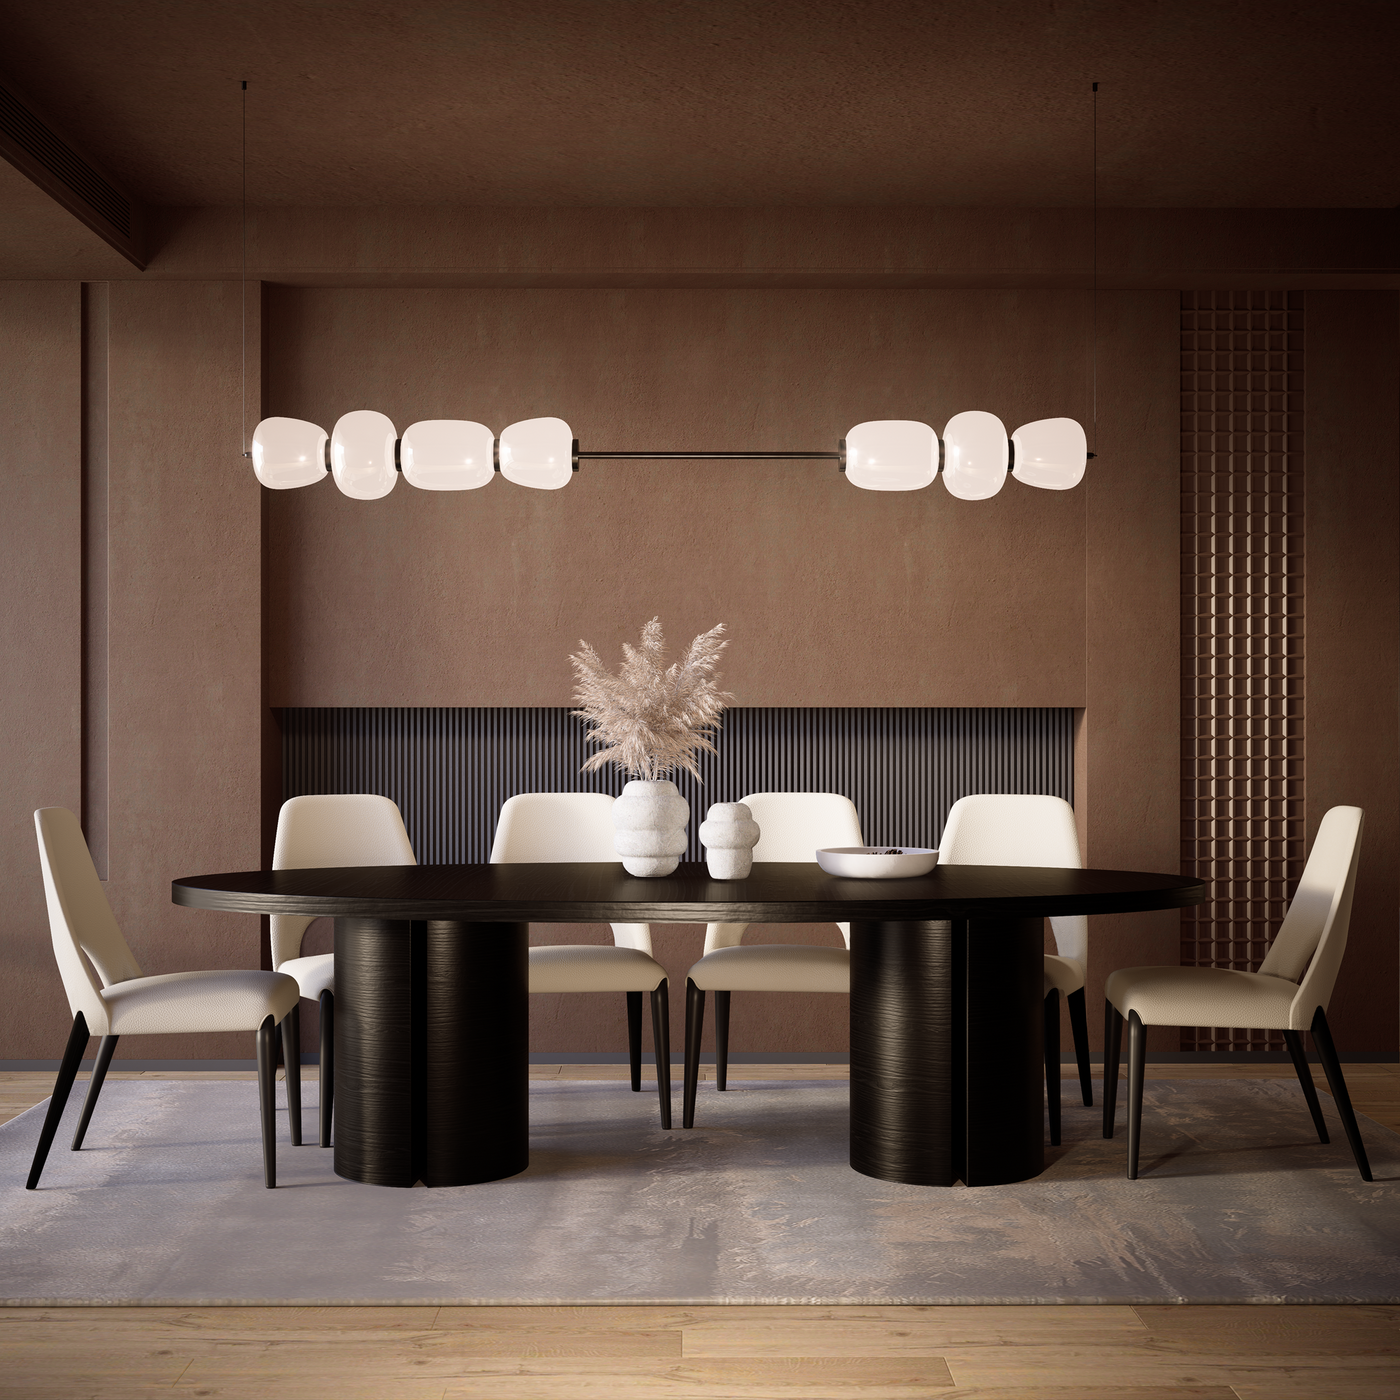 Kenichi Dining Chair Ecru Leather - Future Classics Furniture